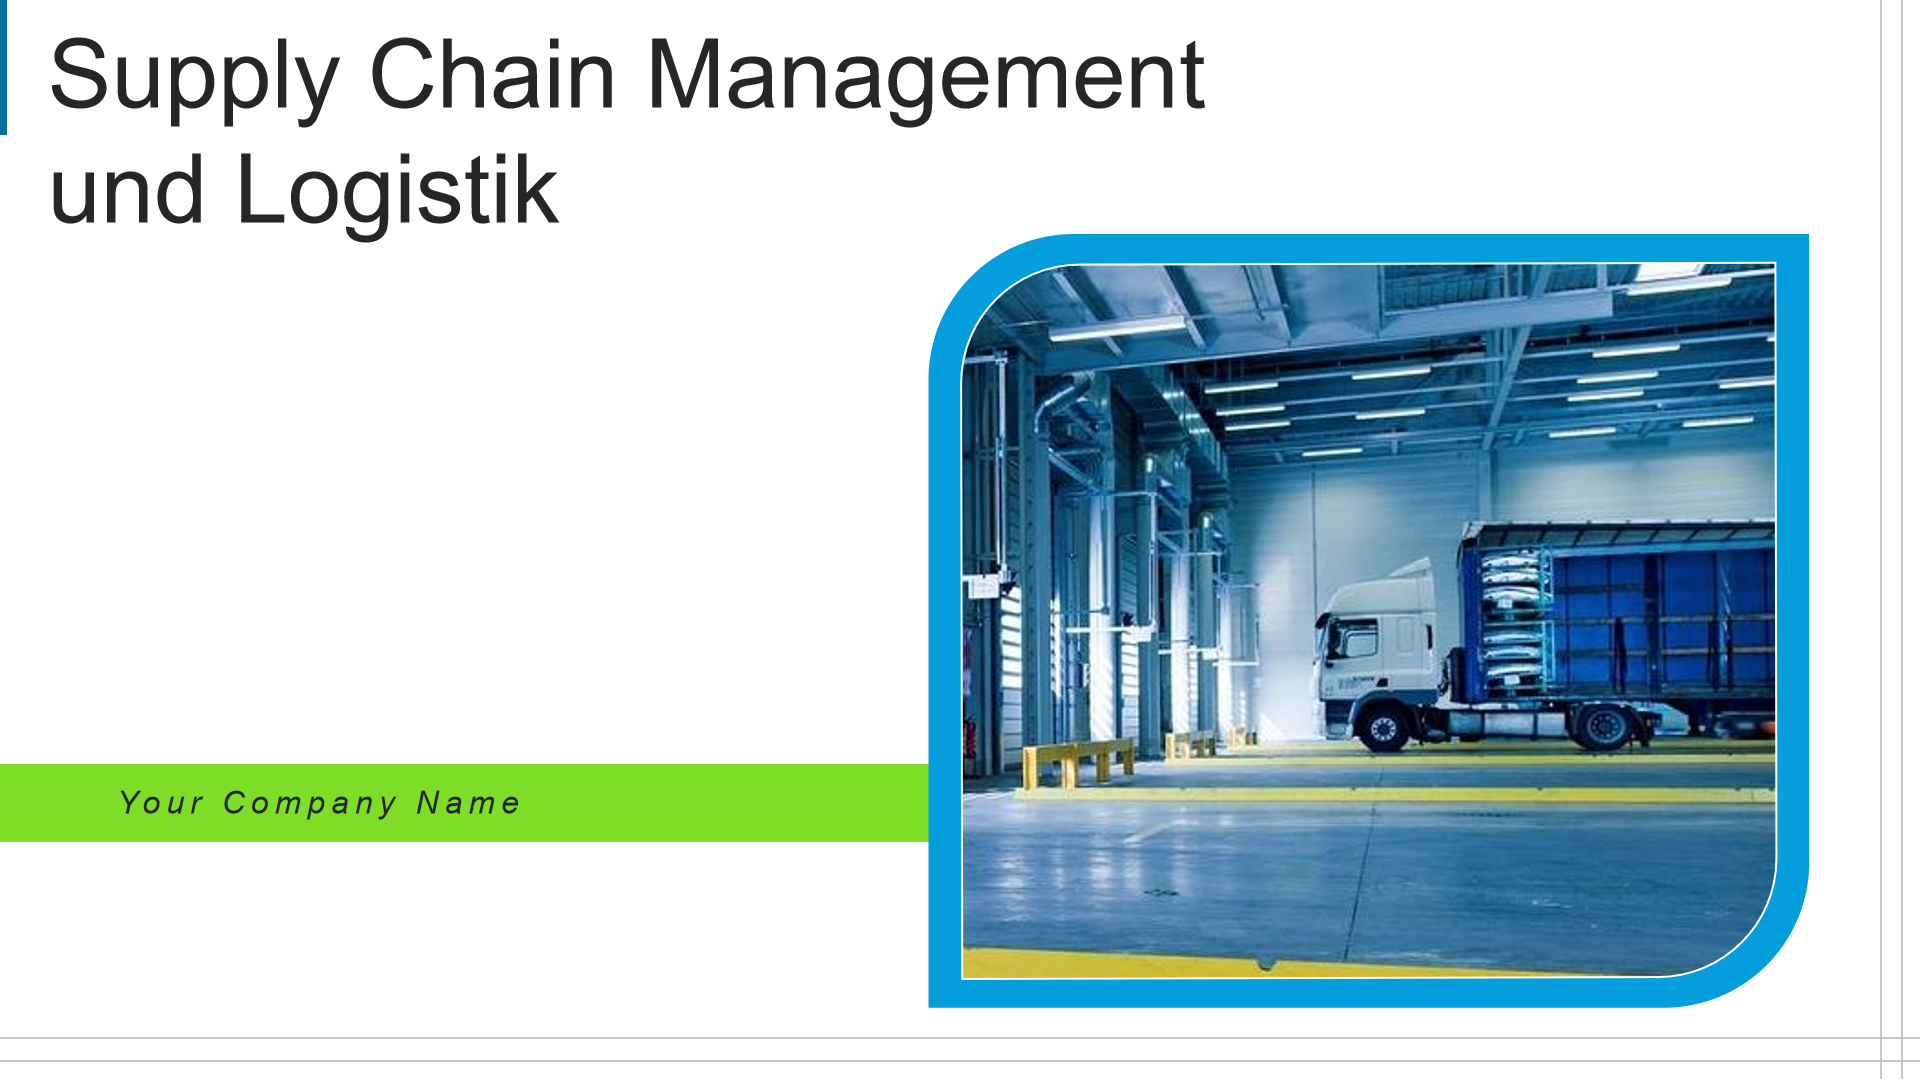  Supply Chain Management und Logistik